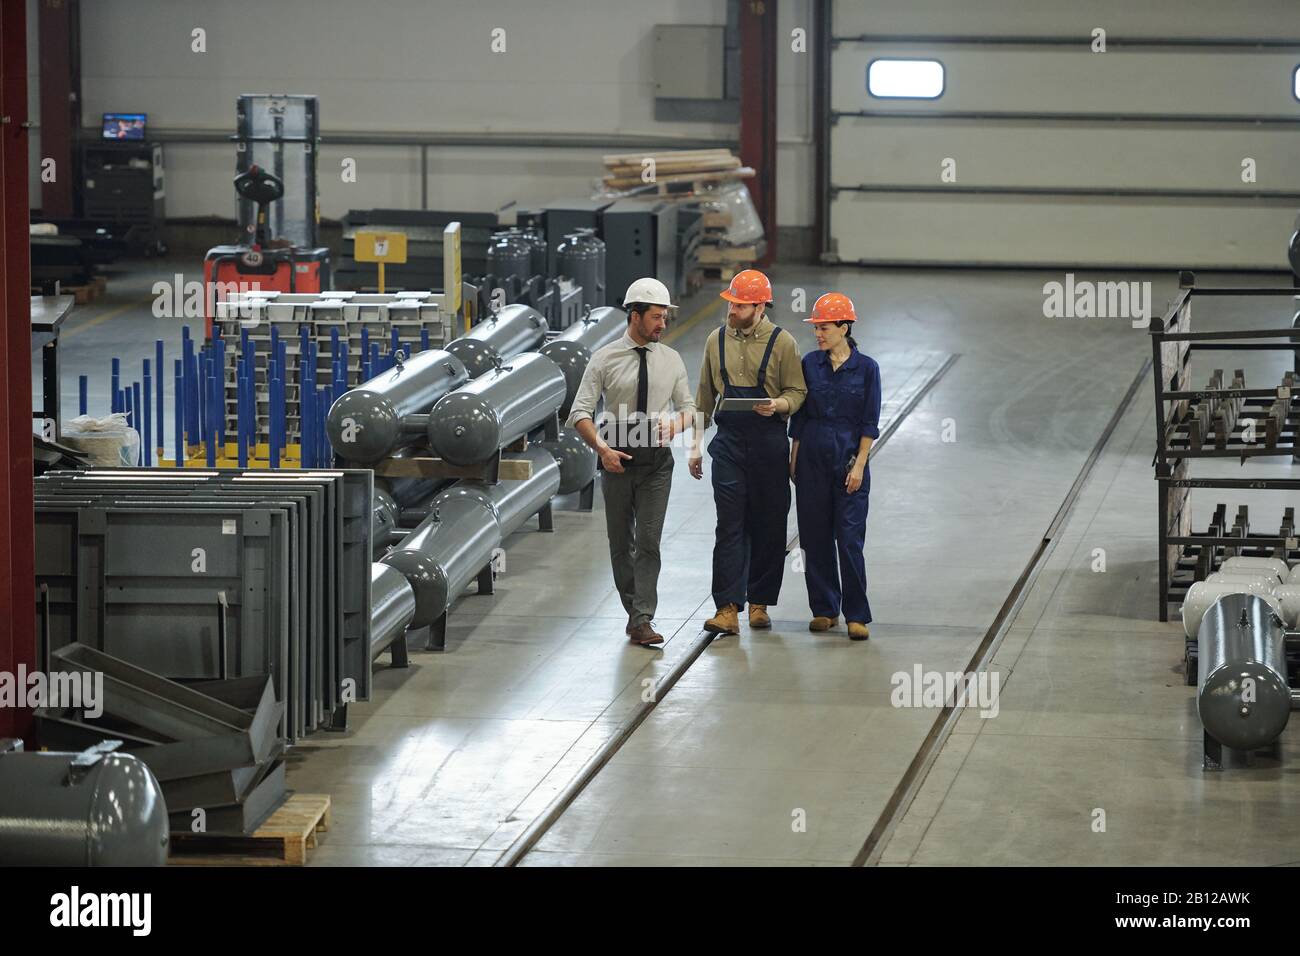 Gruppe von modernen professionellen Technikern in der Arbeitskleidung, die sich entlang der Werkstatt bewegen Stockfoto